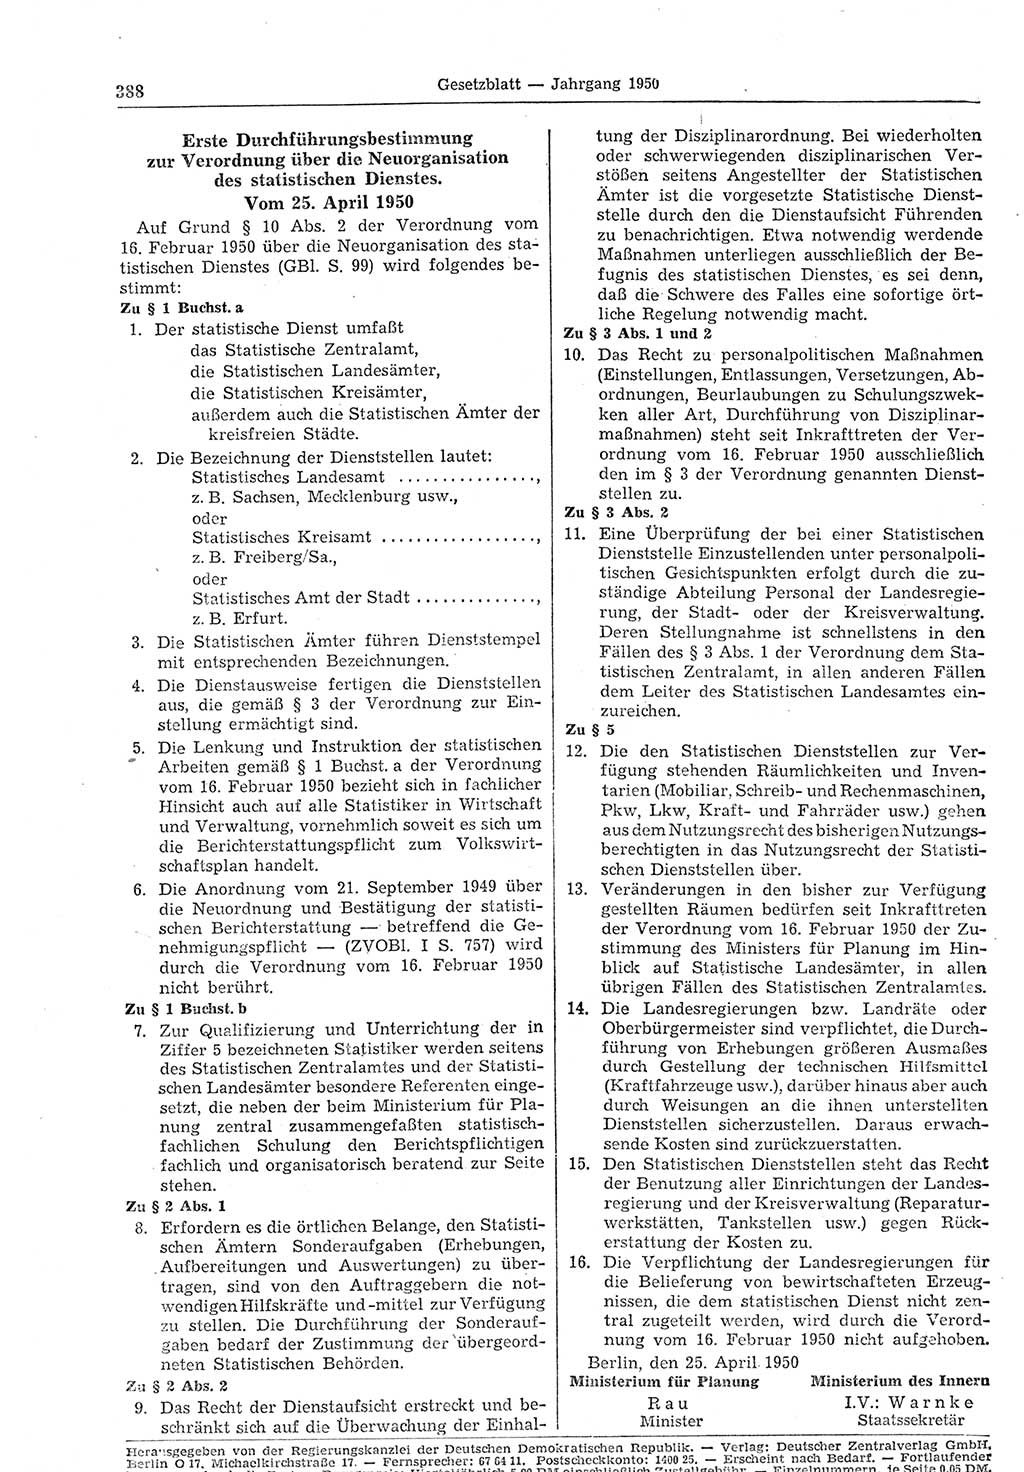 Gesetzblatt (GBl.) der Deutschen Demokratischen Republik (DDR) 1950, Seite 388 (GBl. DDR 1950, S. 388)